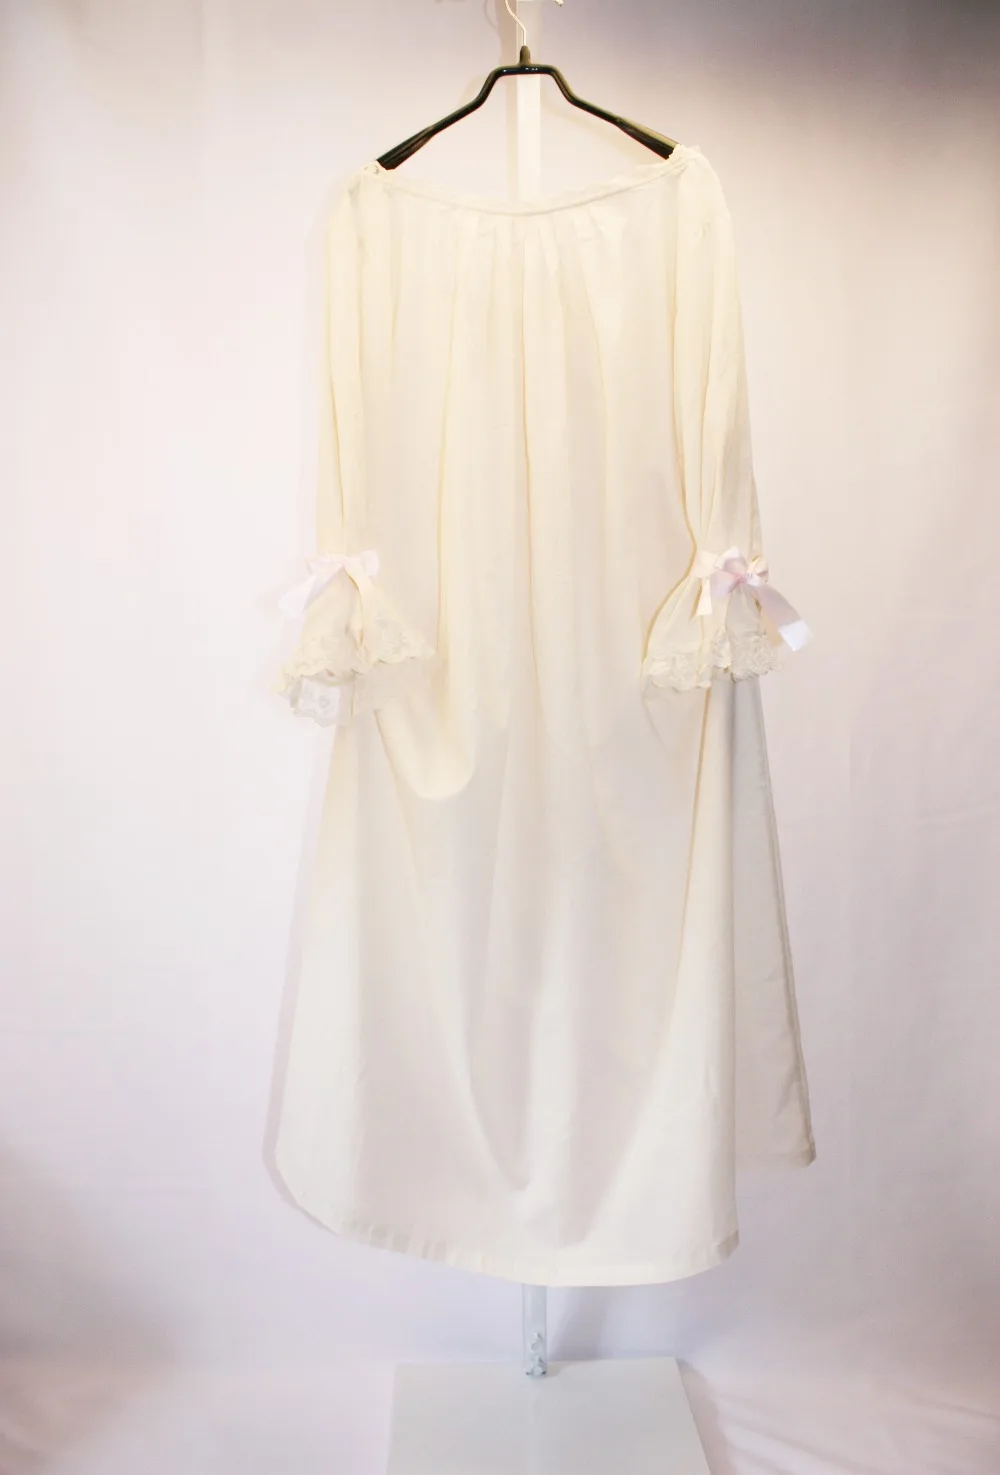 Vintage Sexy Sleepwear Ženy Bavlna Stredoveké Nightgown Biela tvaru Kráľovná Šaty Noc Šaty Lolita Princezná Domov Šaty